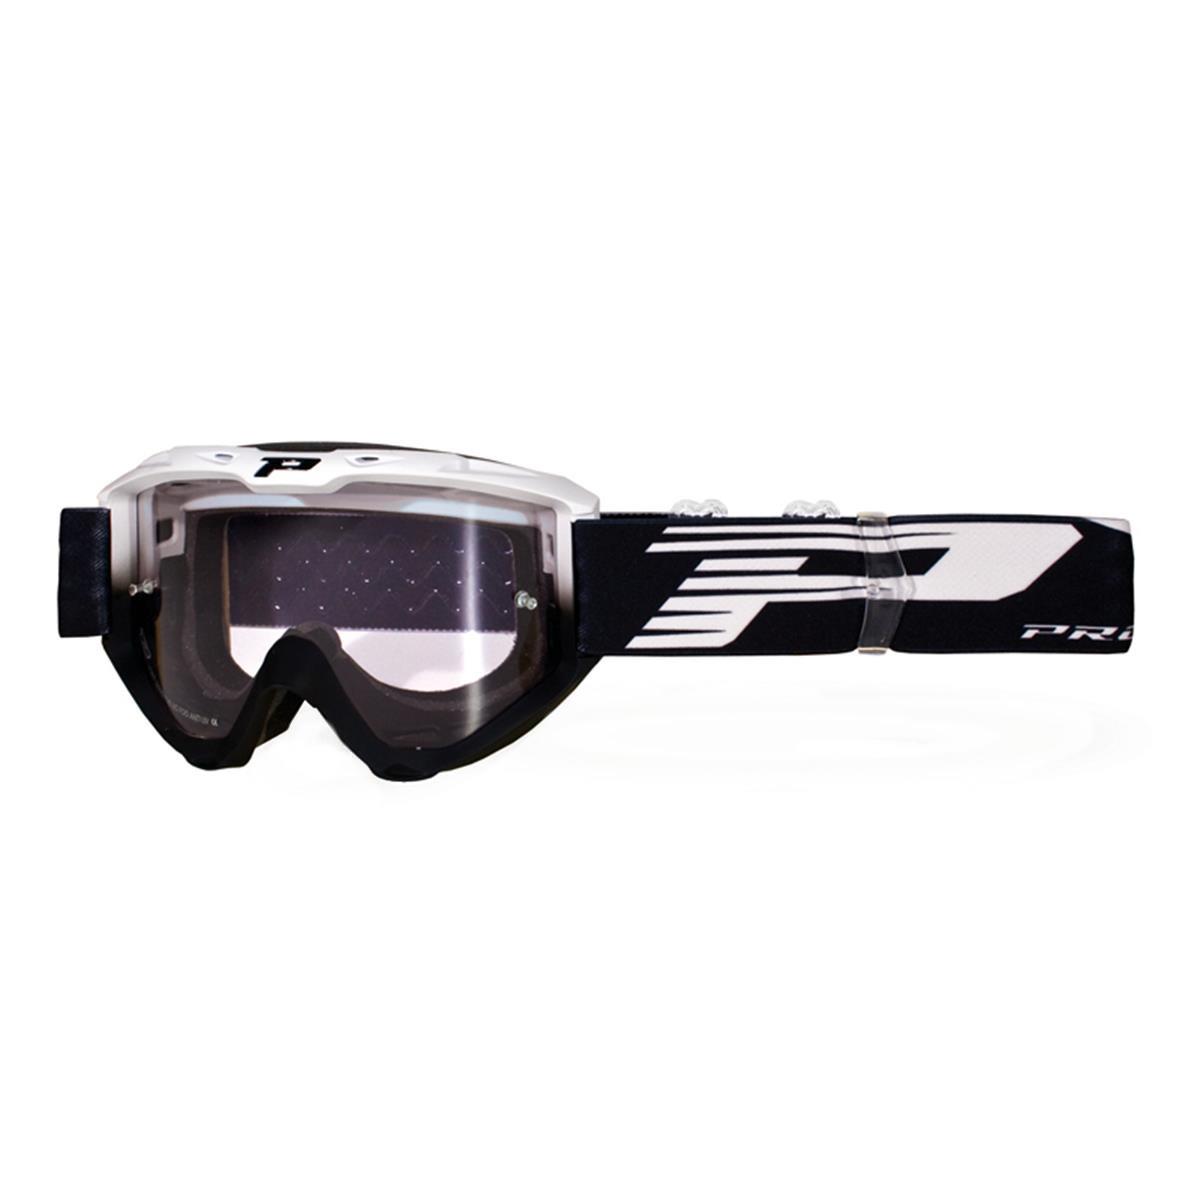 ProGrip Crossbrille 3450 LS Riot Weiß/Schwarz